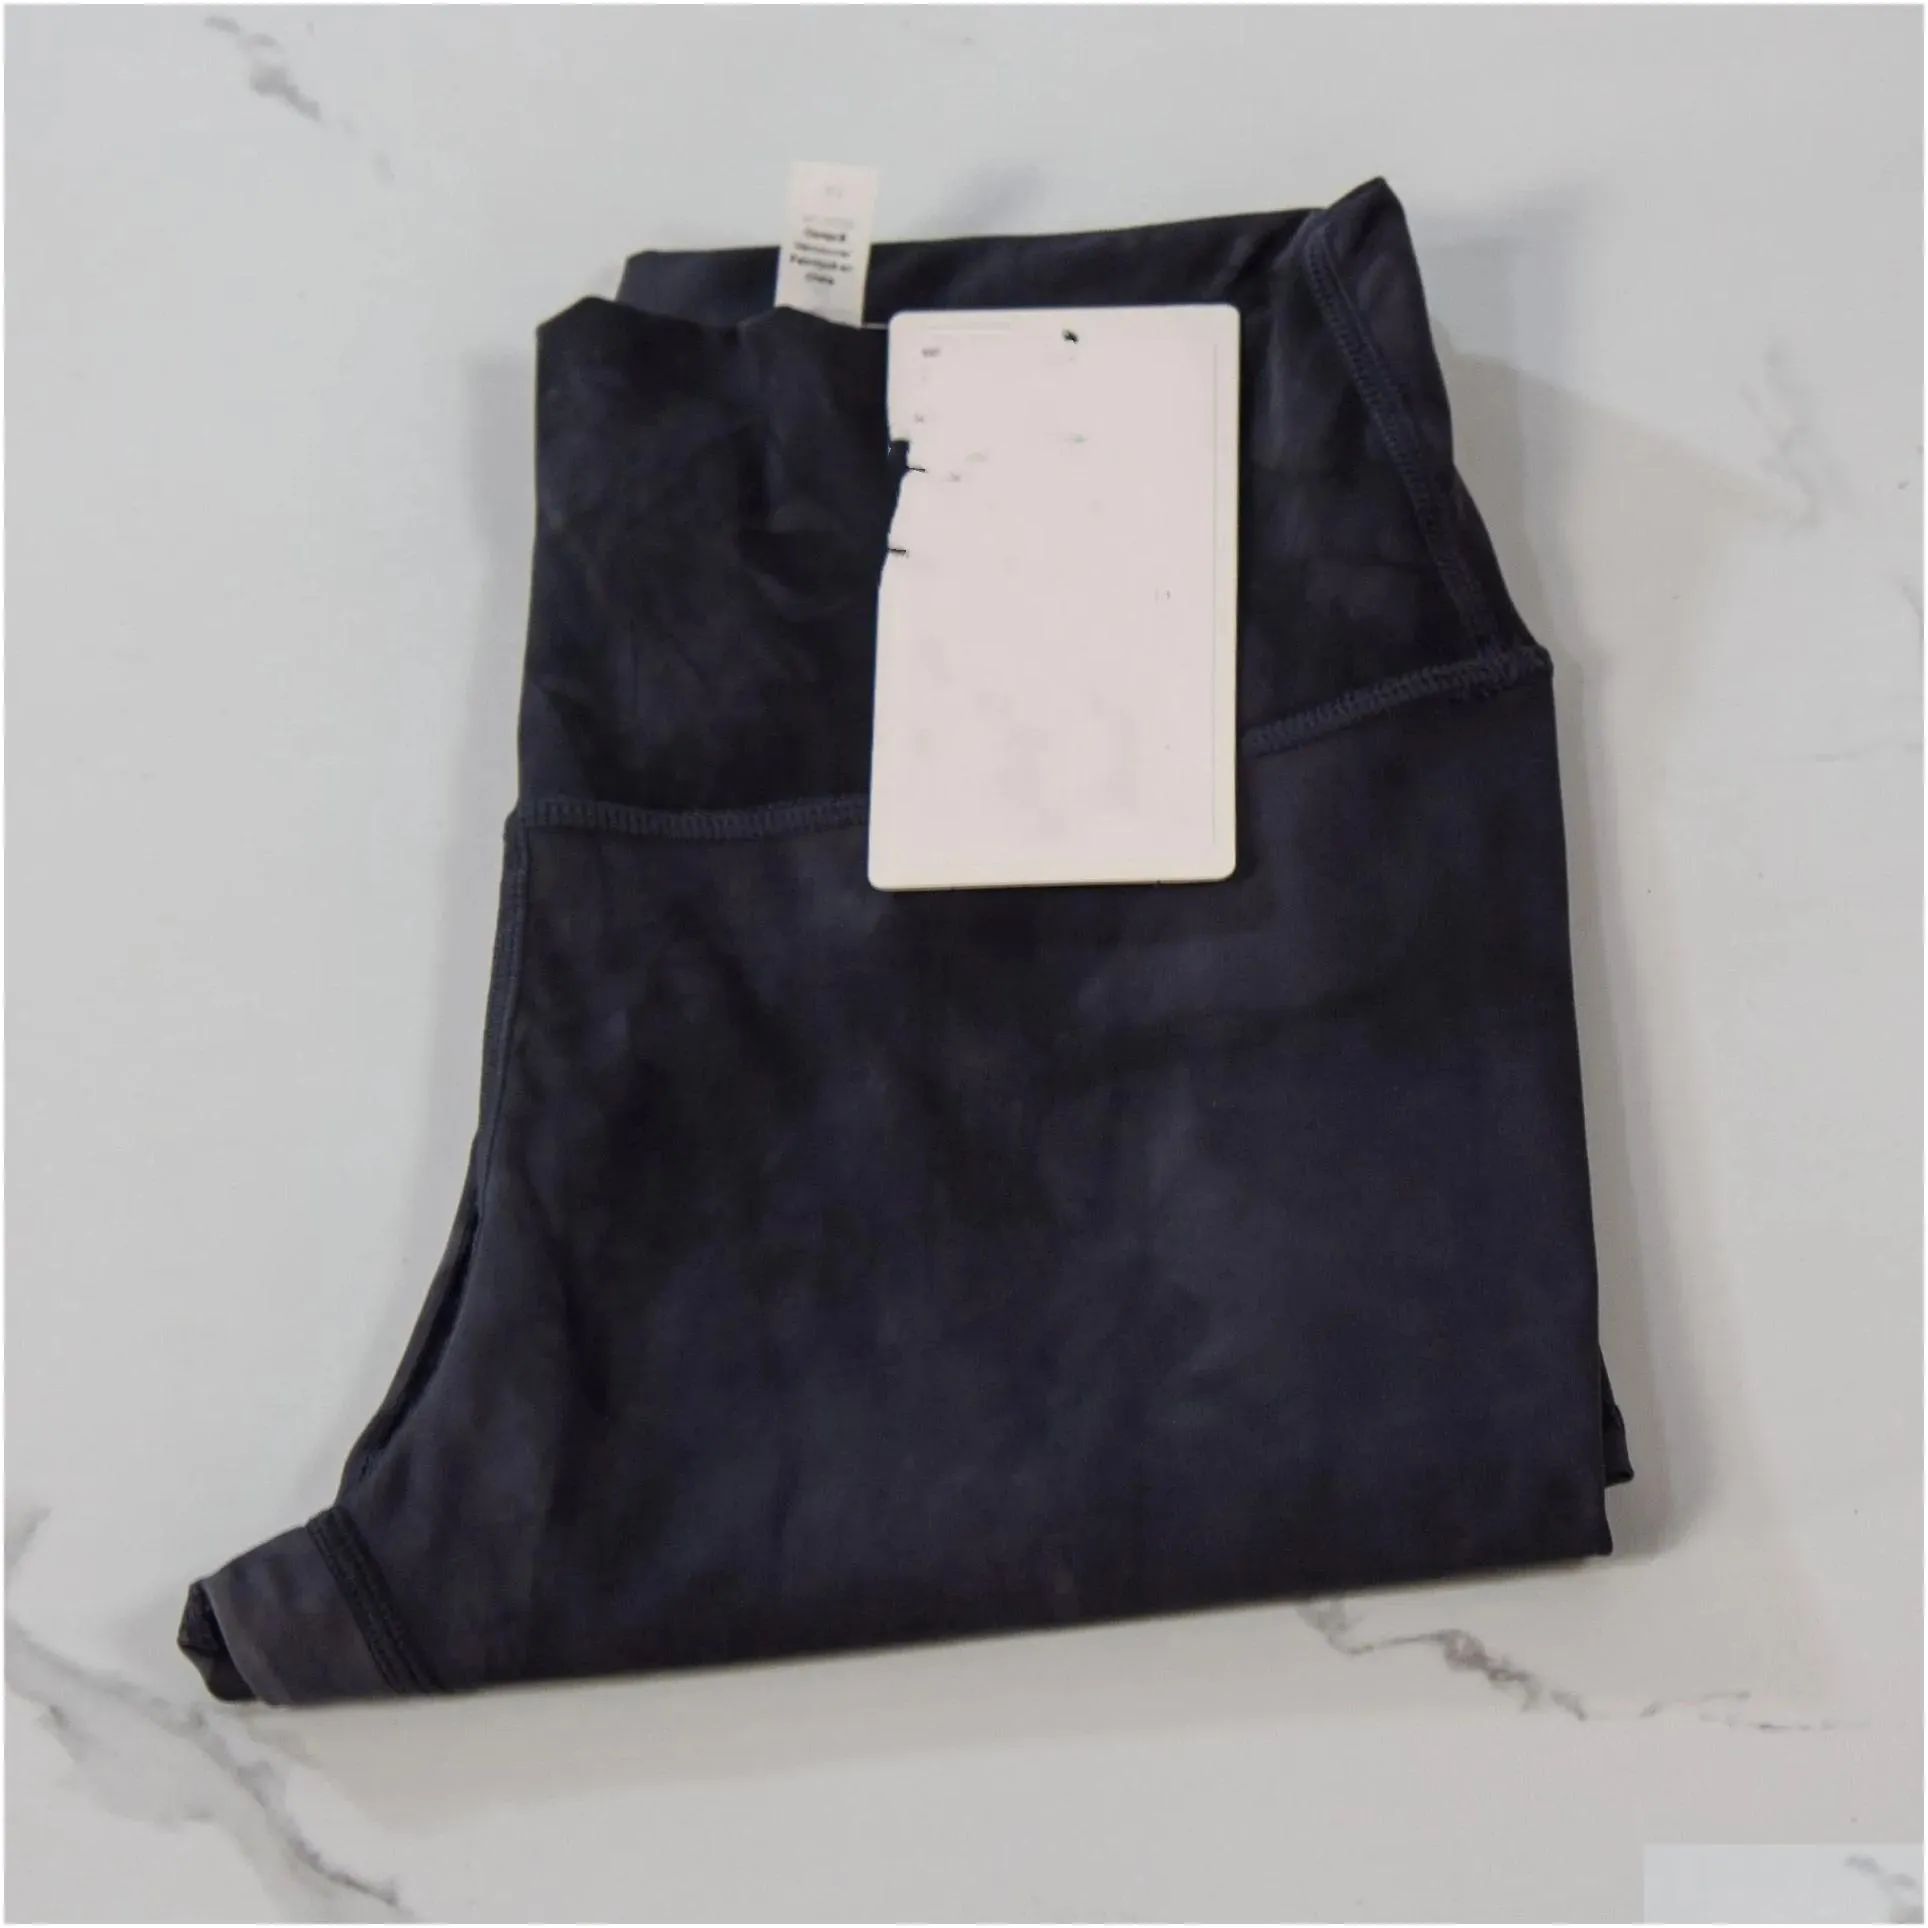 1)Tie Dye Dark Gray-Lu Packaging With